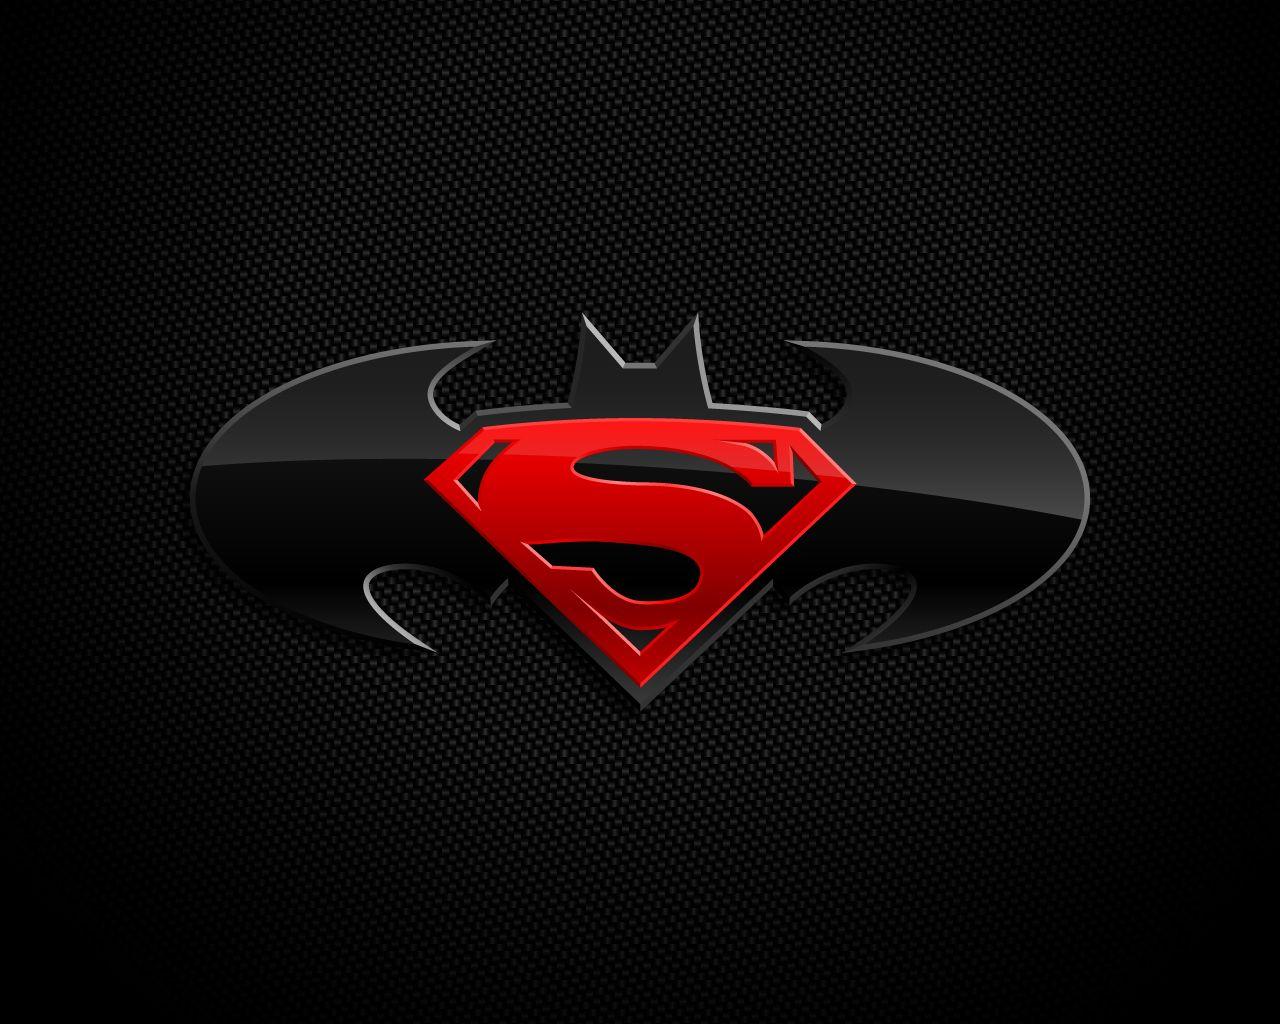 Superman Vs Batman Logo Wallpapers - Wallpaper Cave